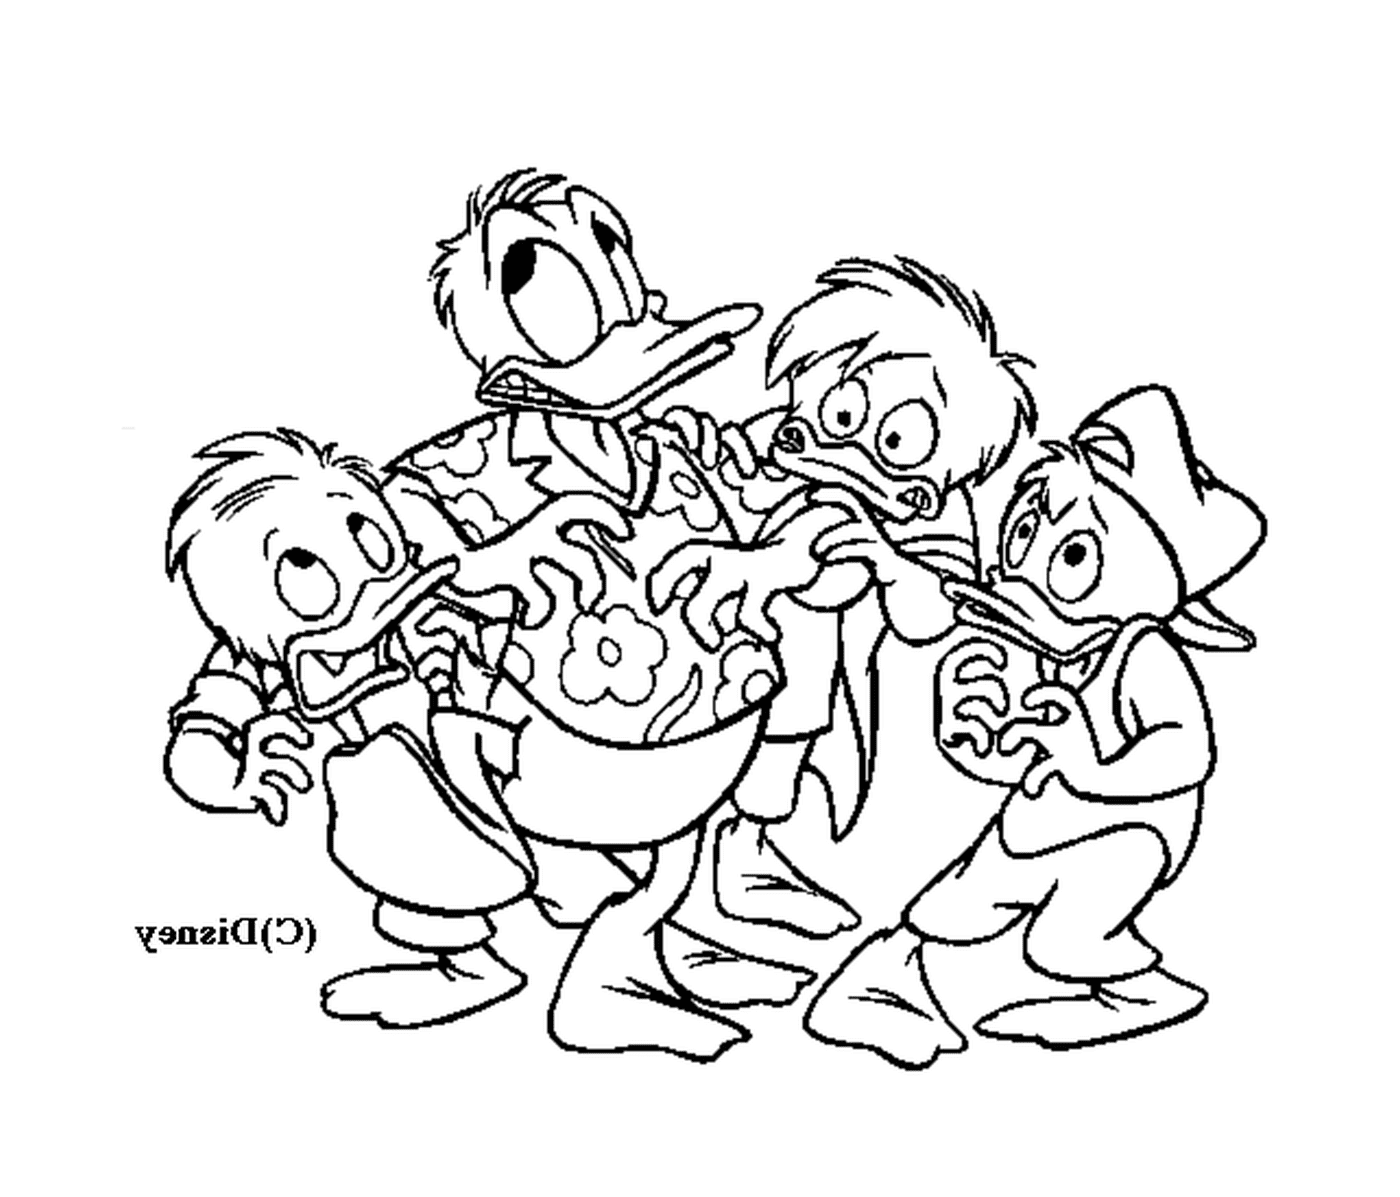  Donald comparte un momento amistoso con sus sobrinos 